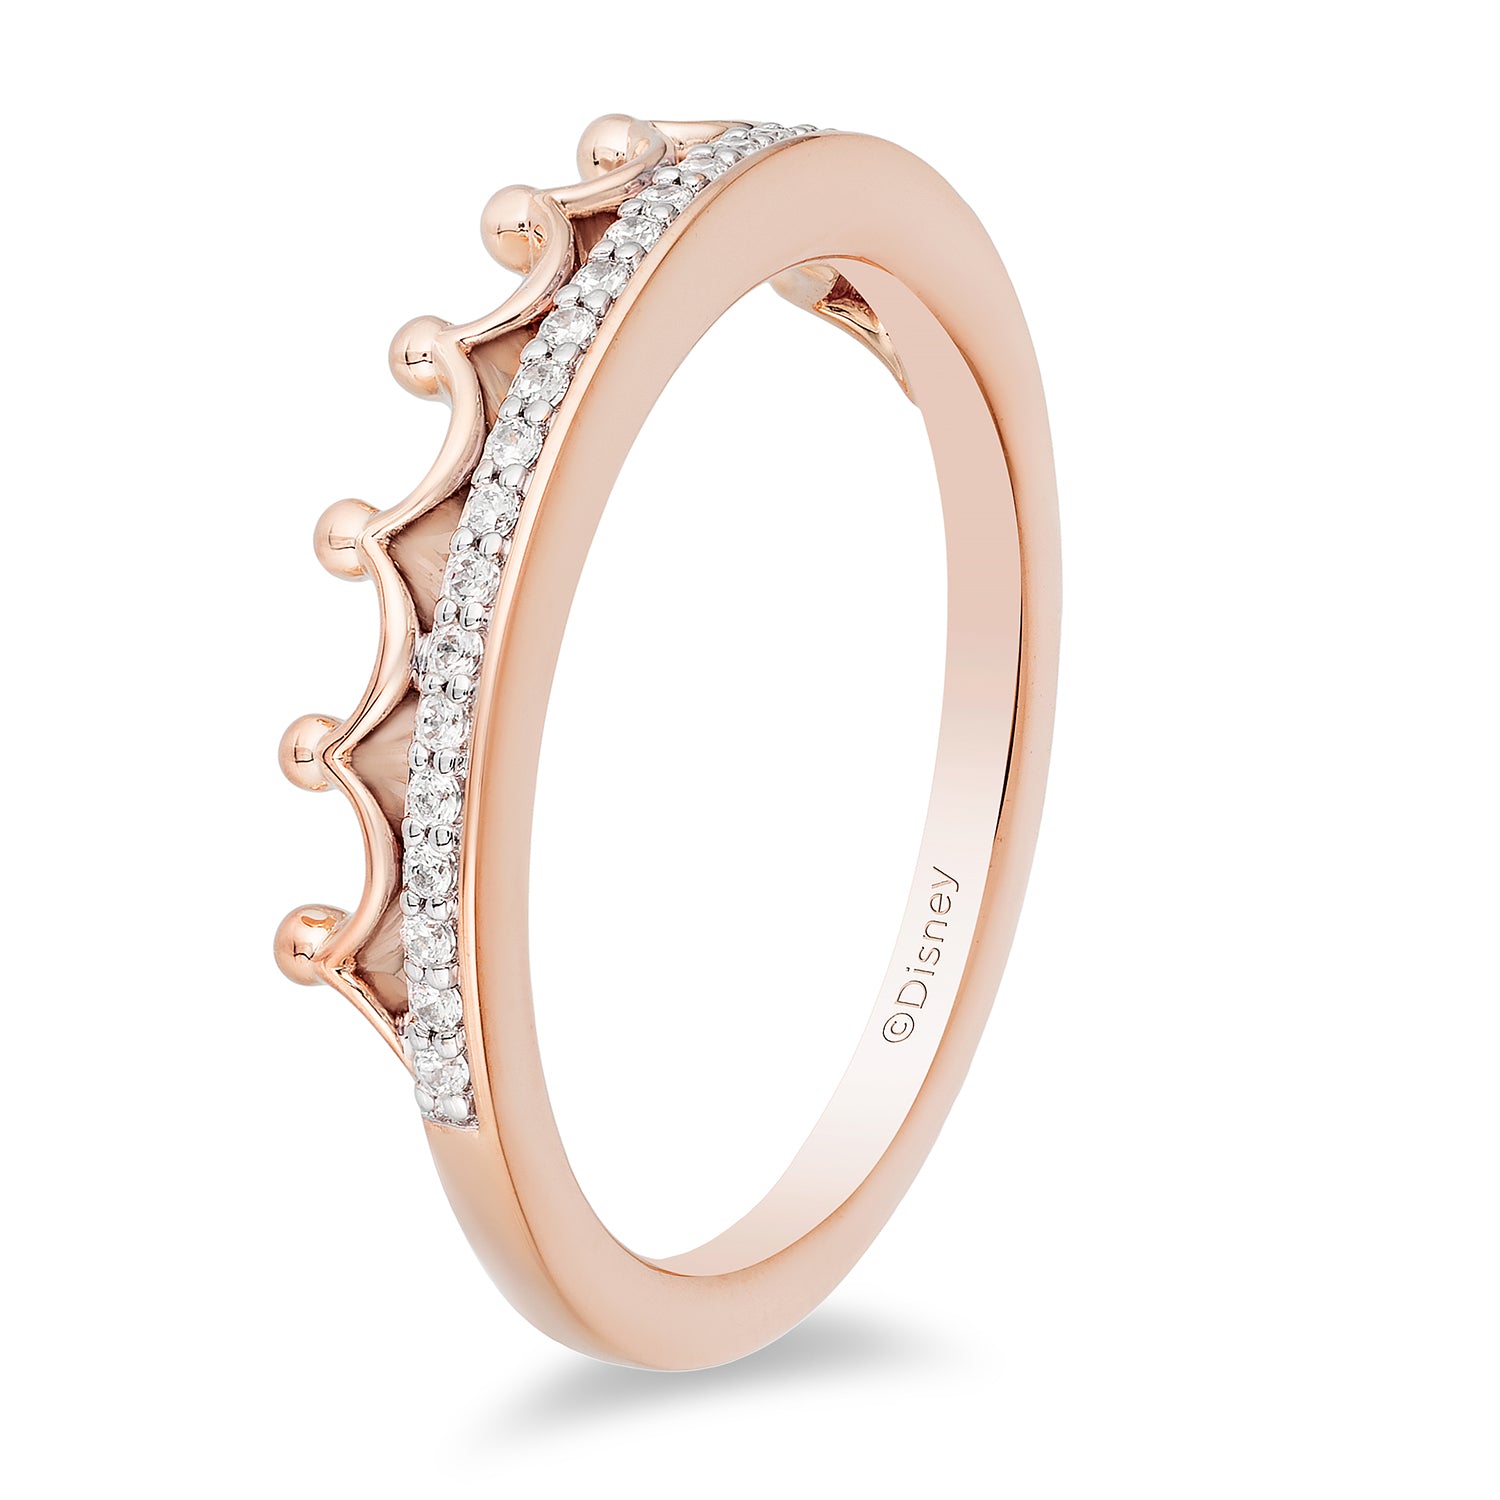 Princess Cut Diamond Ring, 14K Rose Gold Ring, Engagement Ring, Promis